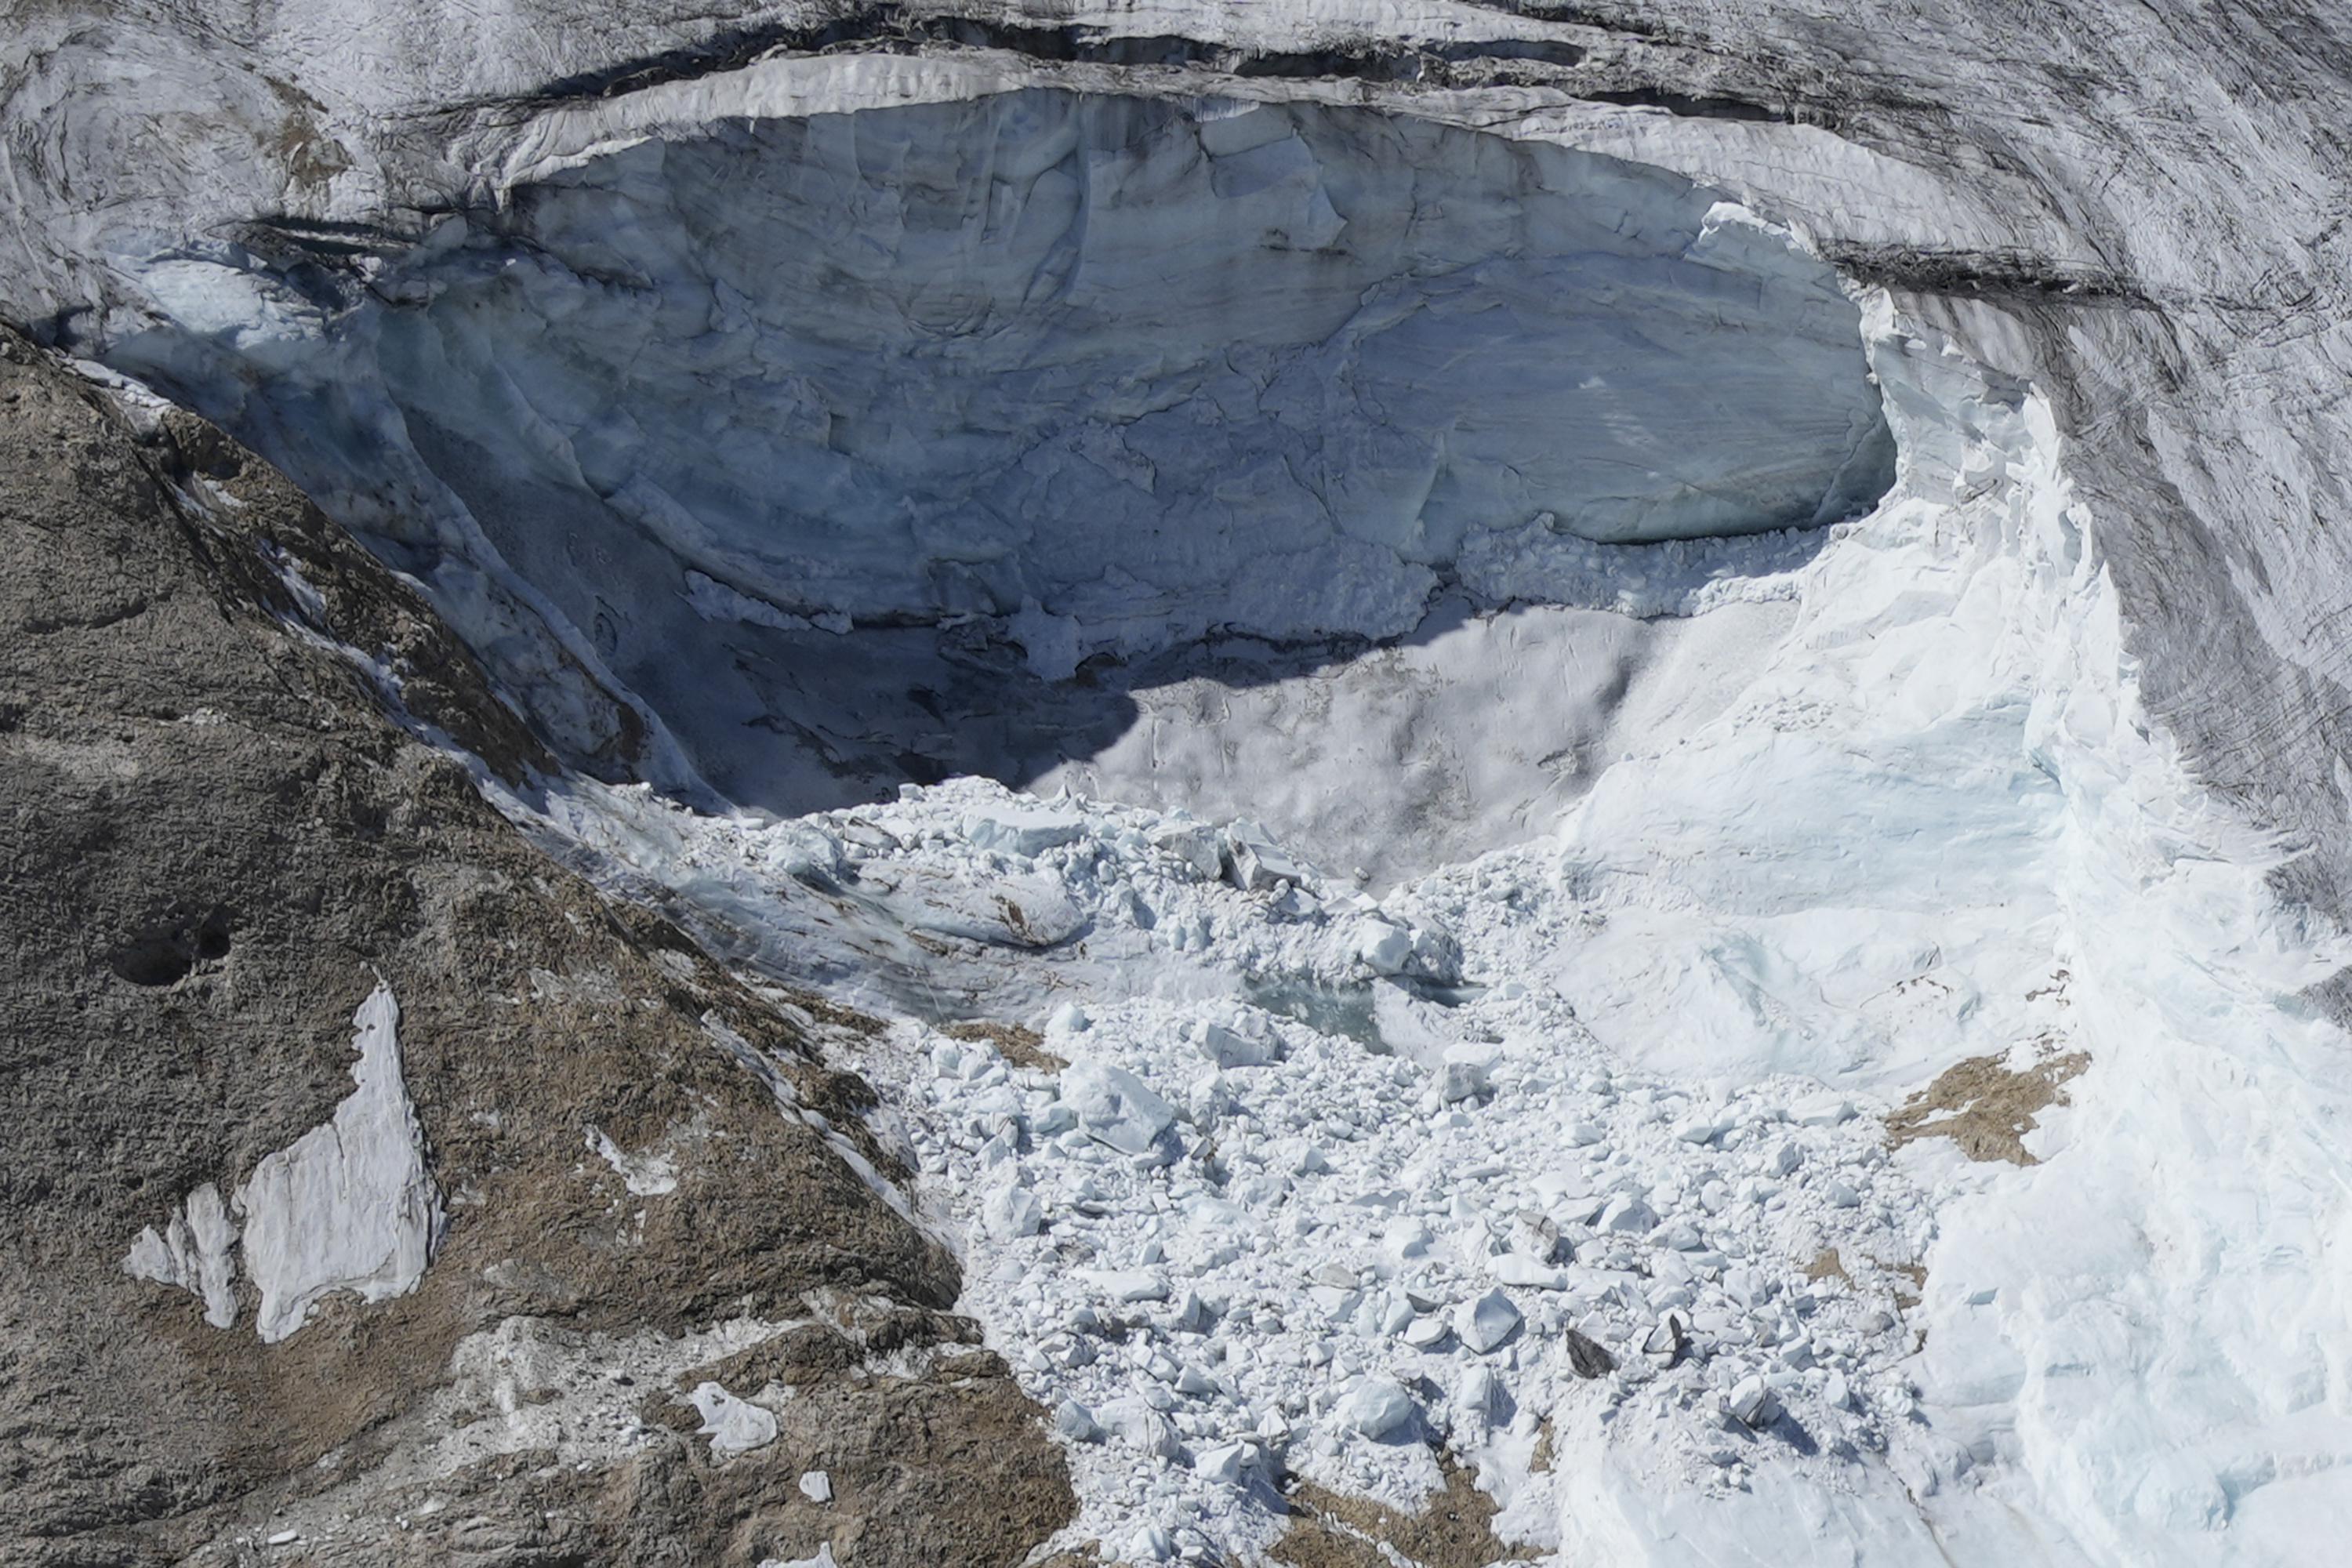 Des parties de corps, du matériel retrouvés sur les glaciers italiens après l’avalanche